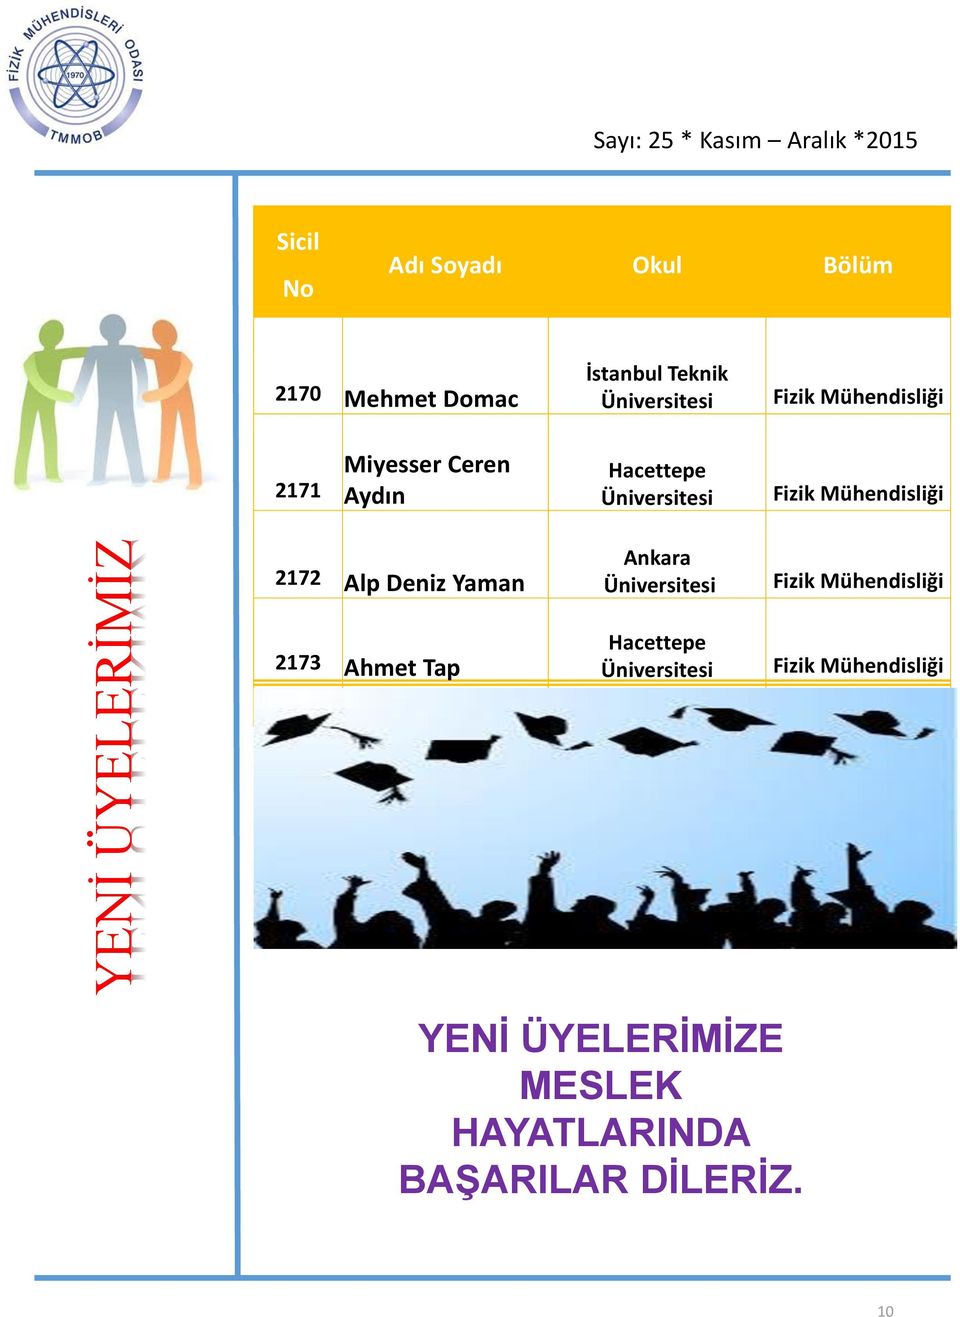 Mühendisliği 2172 Alp Deniz Yaman 2173 Ahmet Tap Ankara Üniversitesi Hacettepe